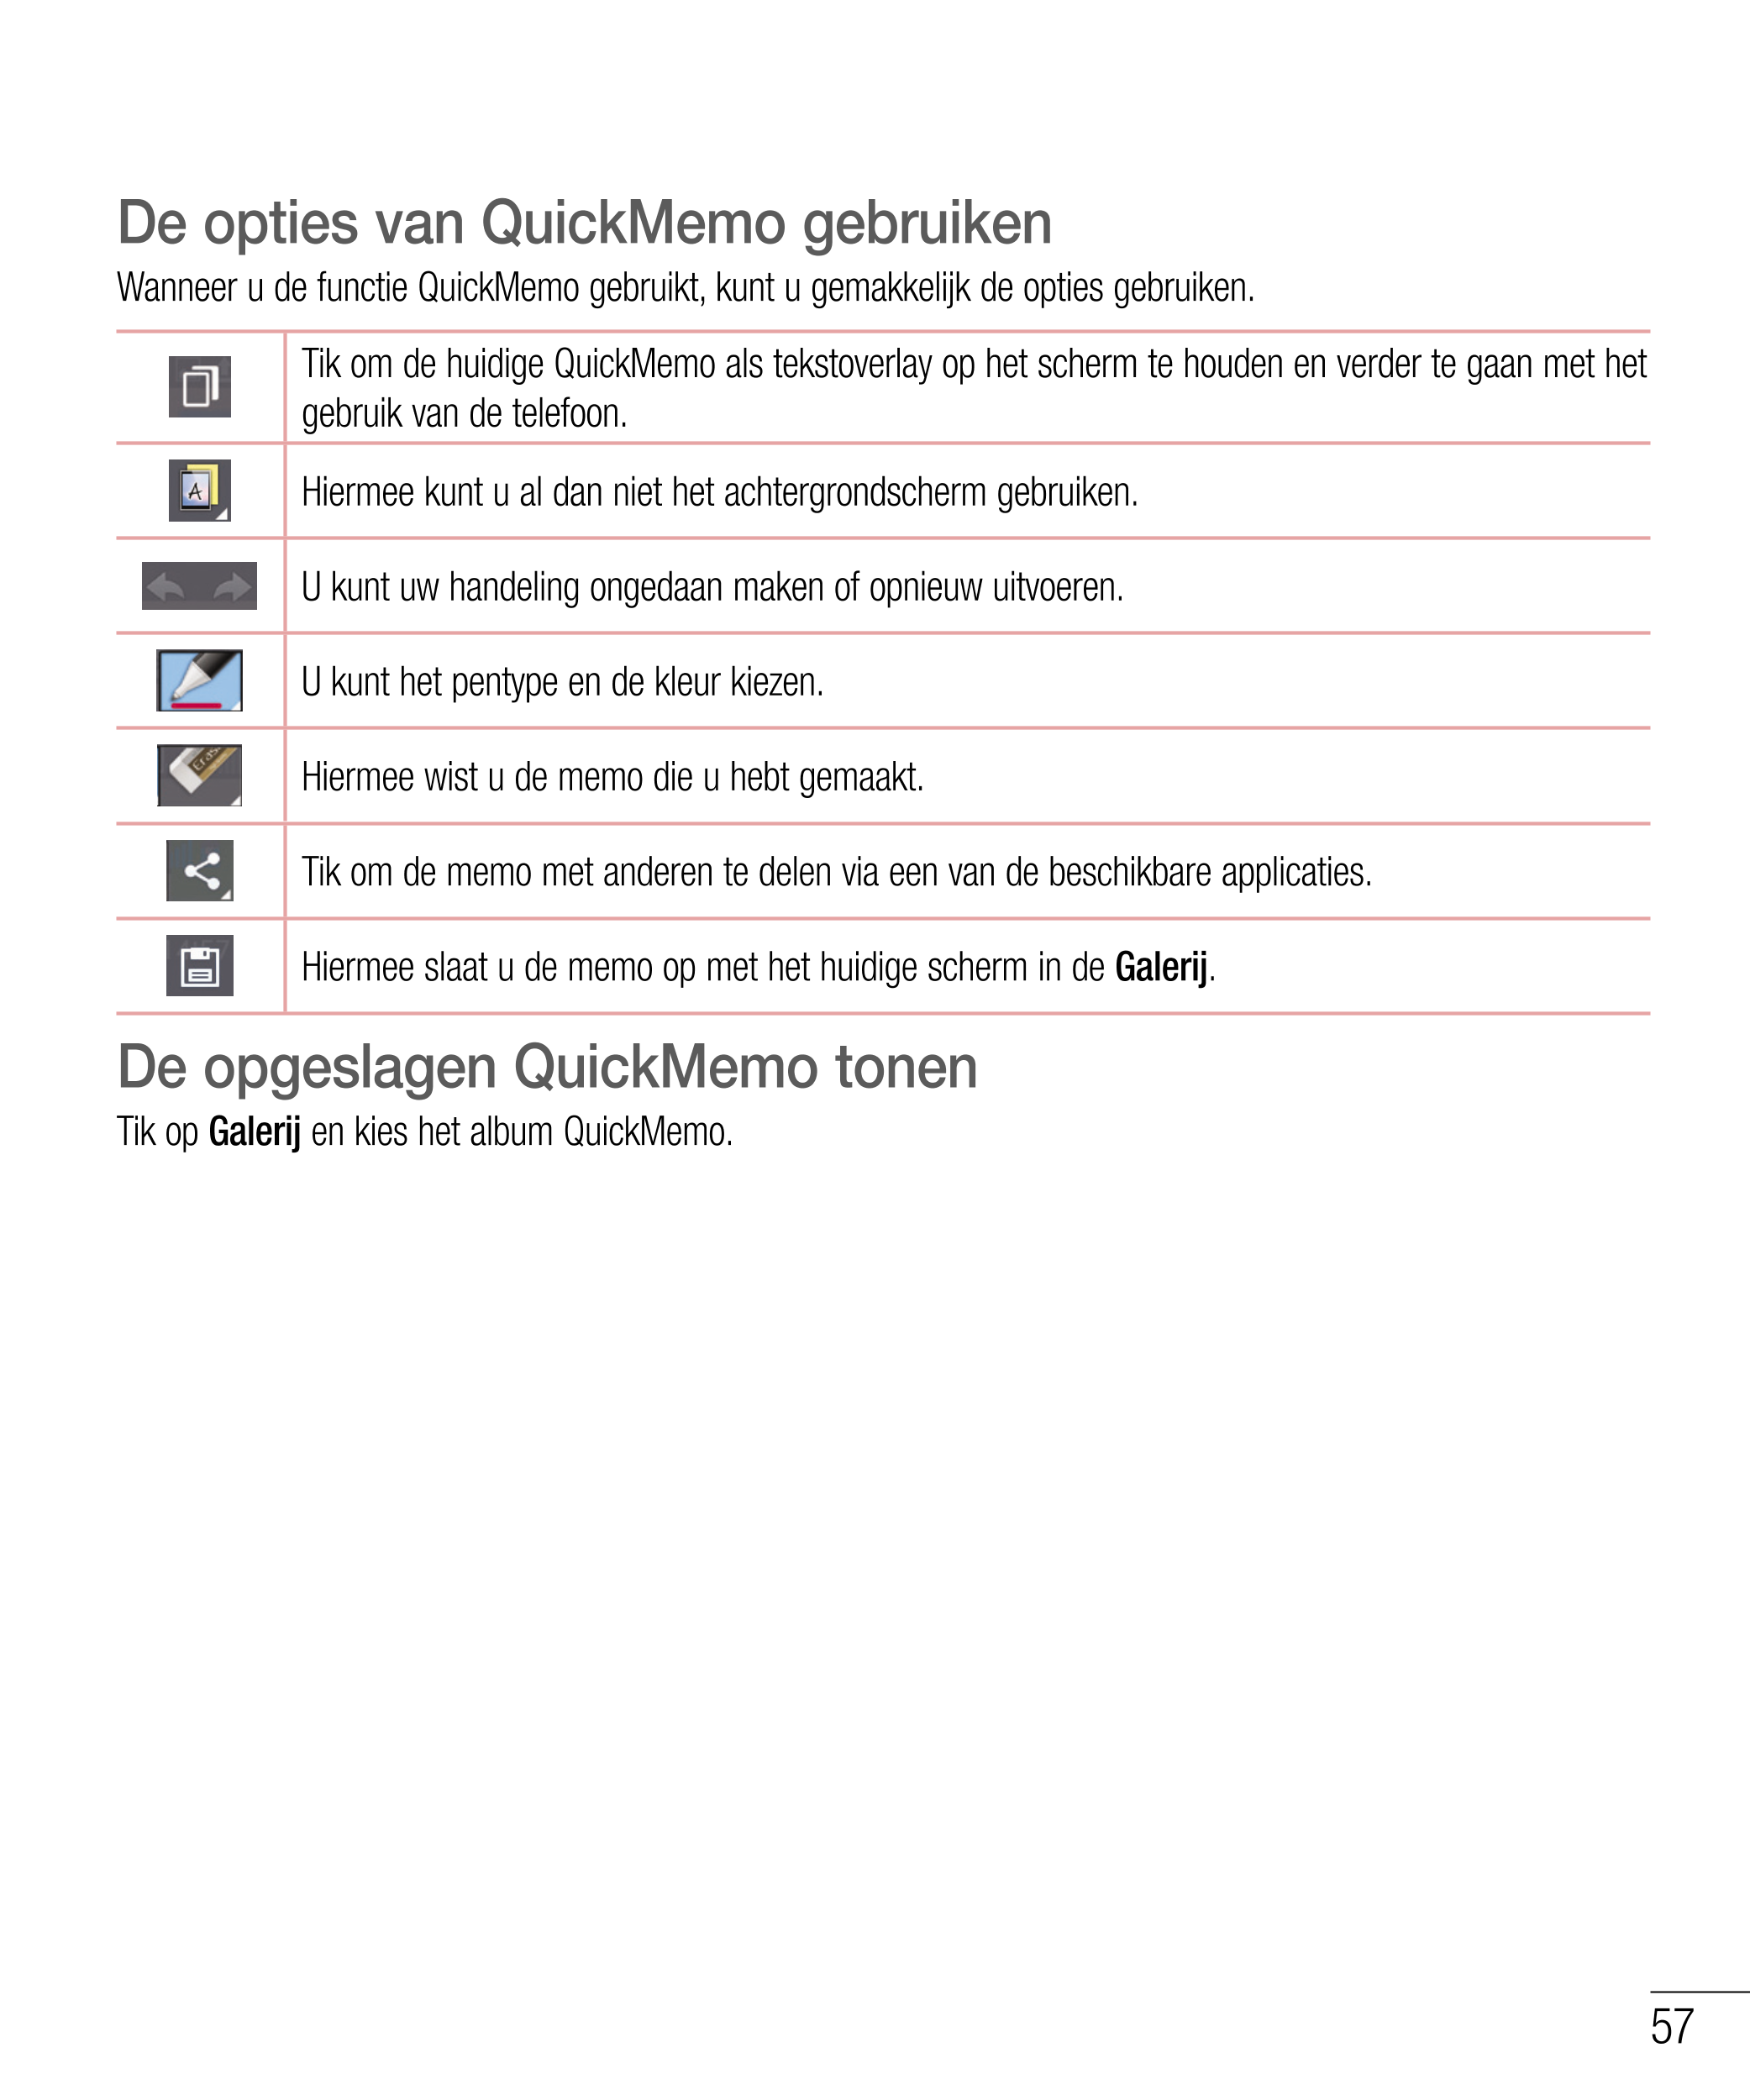 De opties van QuickMemo gebruiken
Wanneer u de functie QuickMemo gebruikt, kunt u gemakkelijk de opties gebruiken.
Tik om de hui